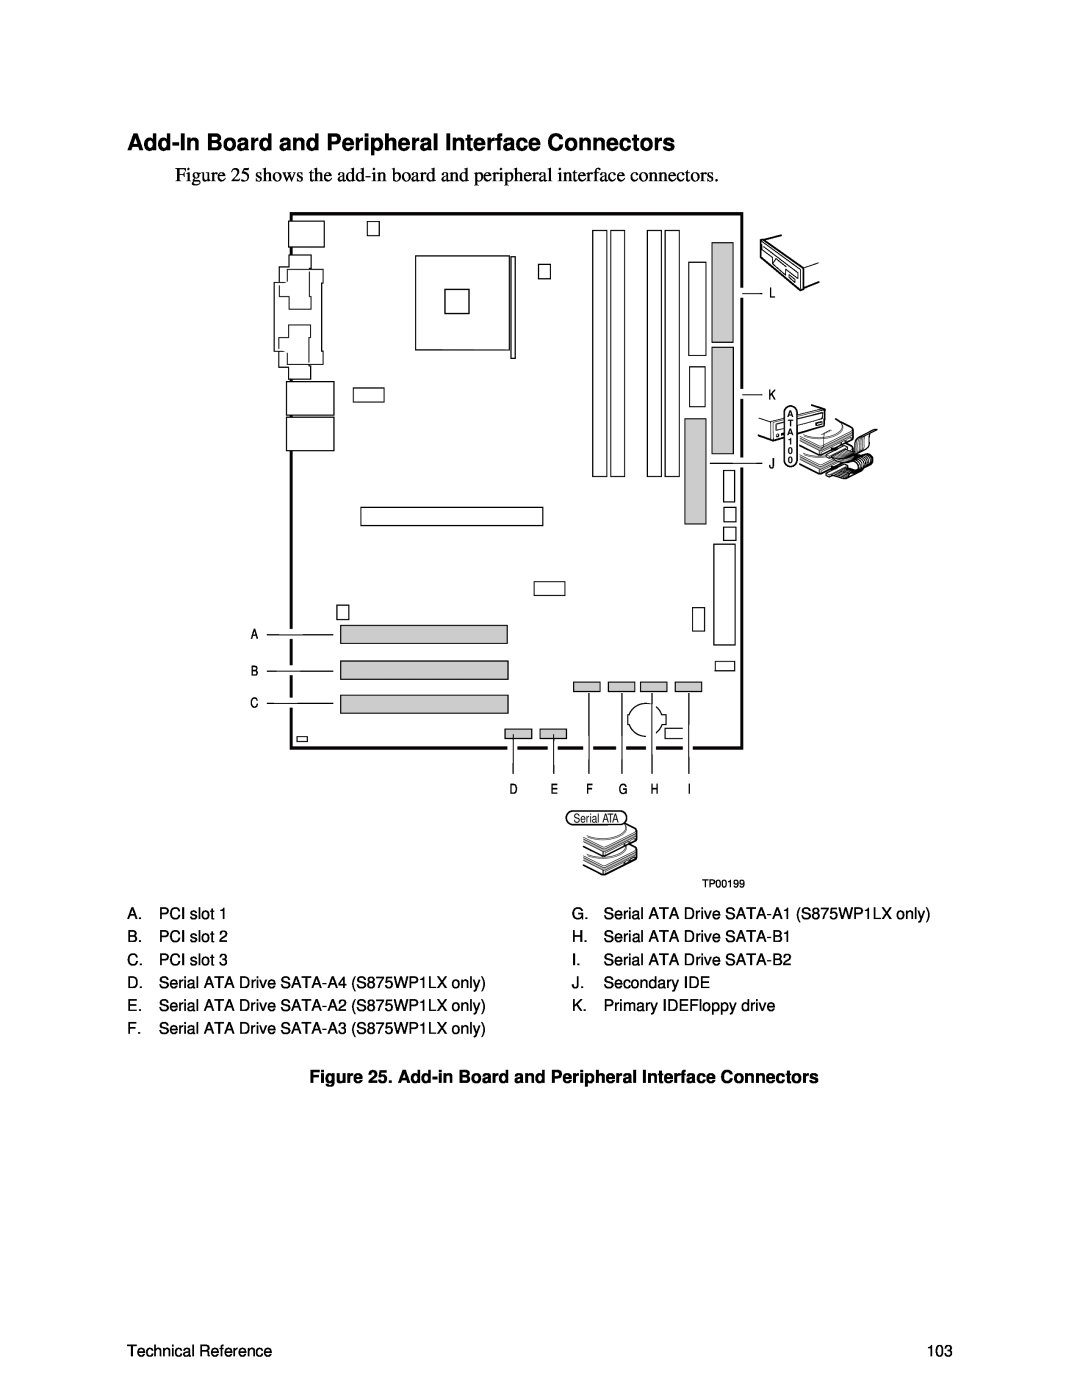 Intel S875WP1-E manual Add-In Board and Peripheral Interface Connectors, Add-in Board and Peripheral Interface Connectors 